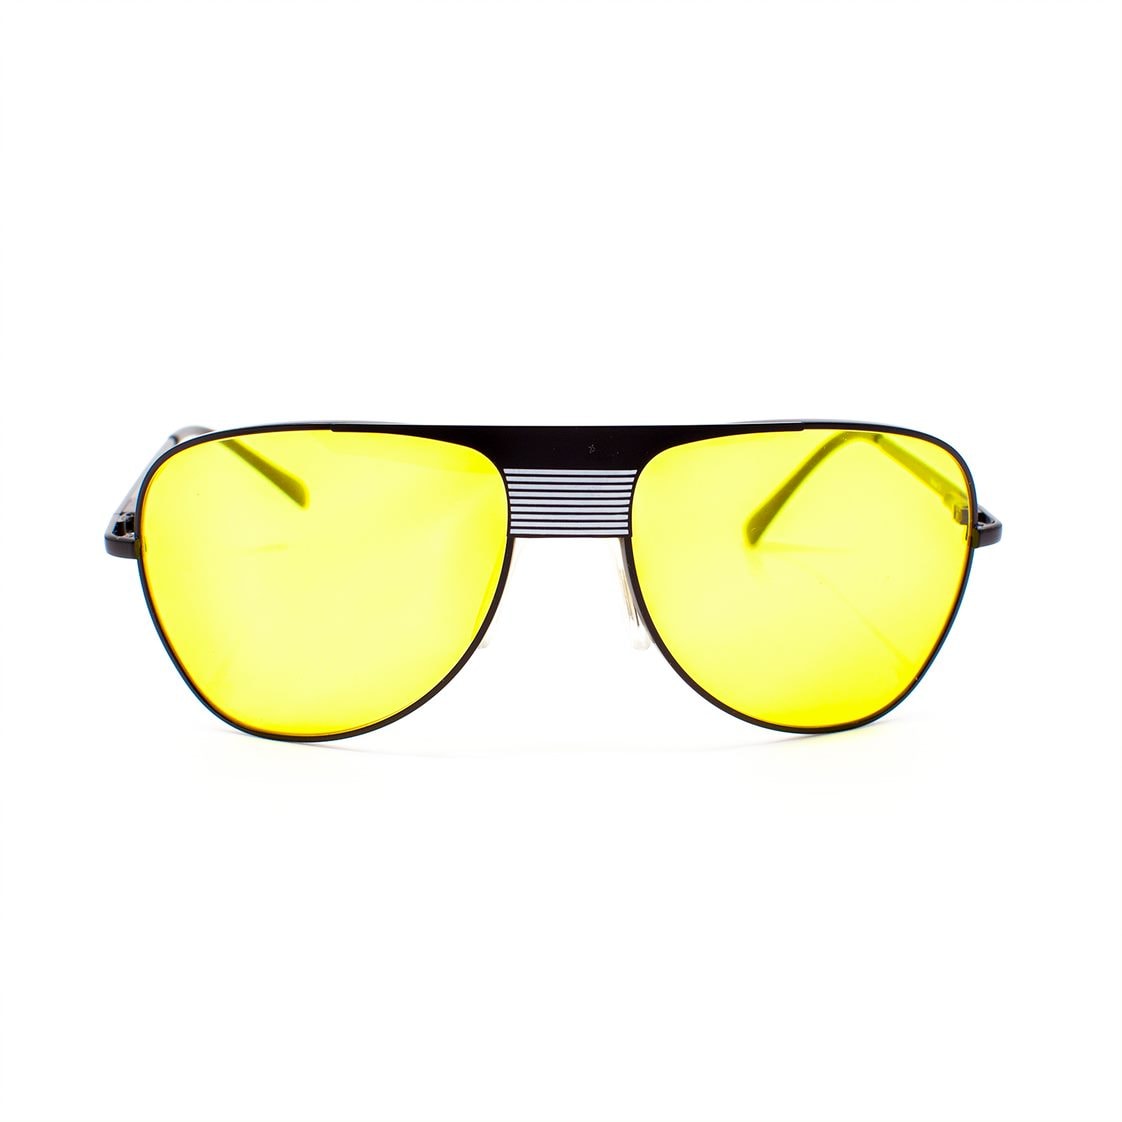 UK Trotting kjørebriller, Nova 3 modell